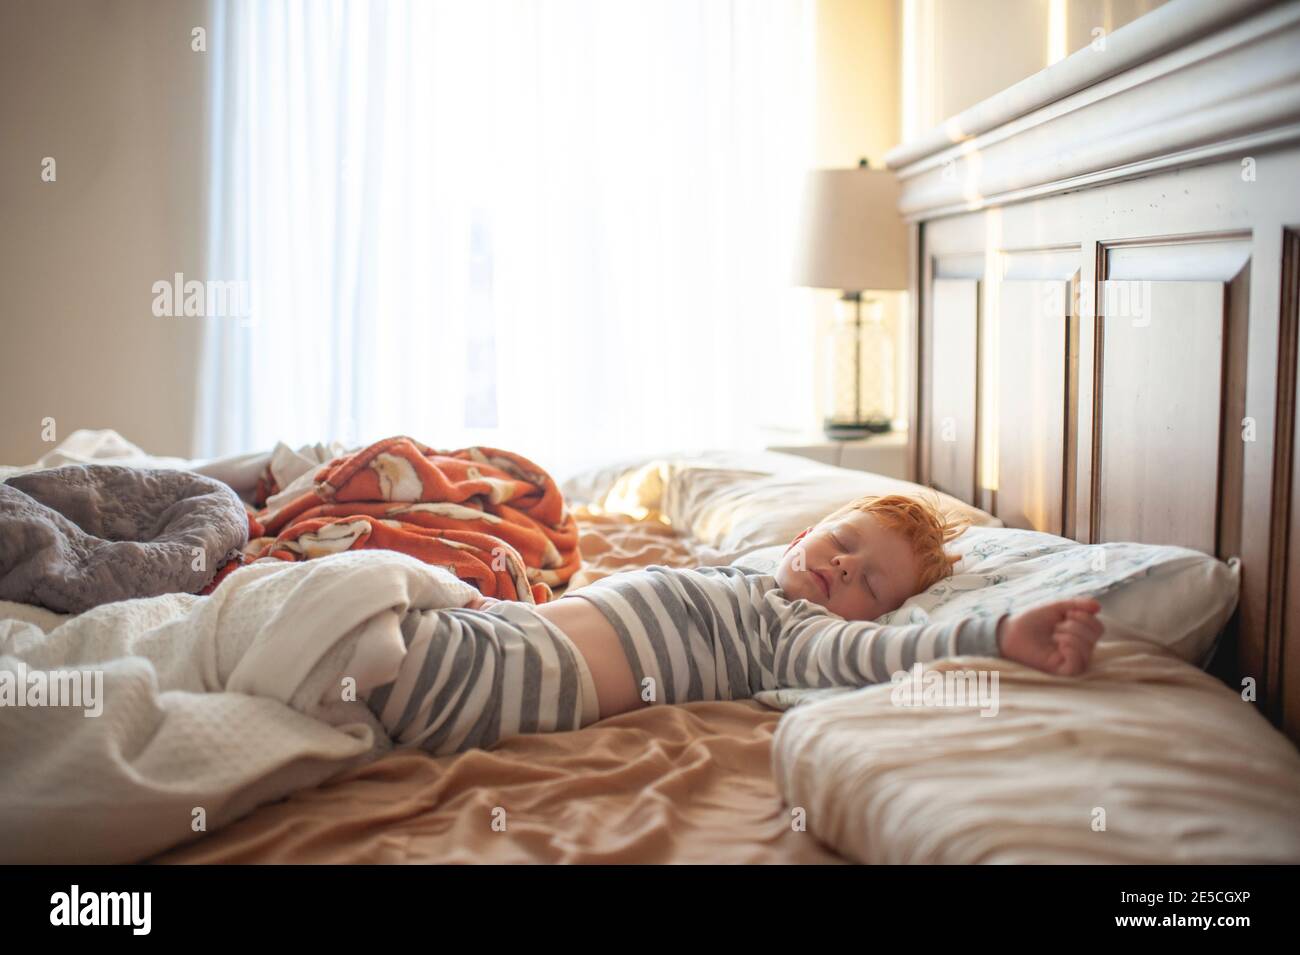 Il bambino di 3-4 anni dormiva nel letto dei genitori disordinato in bella luce Foto Stock